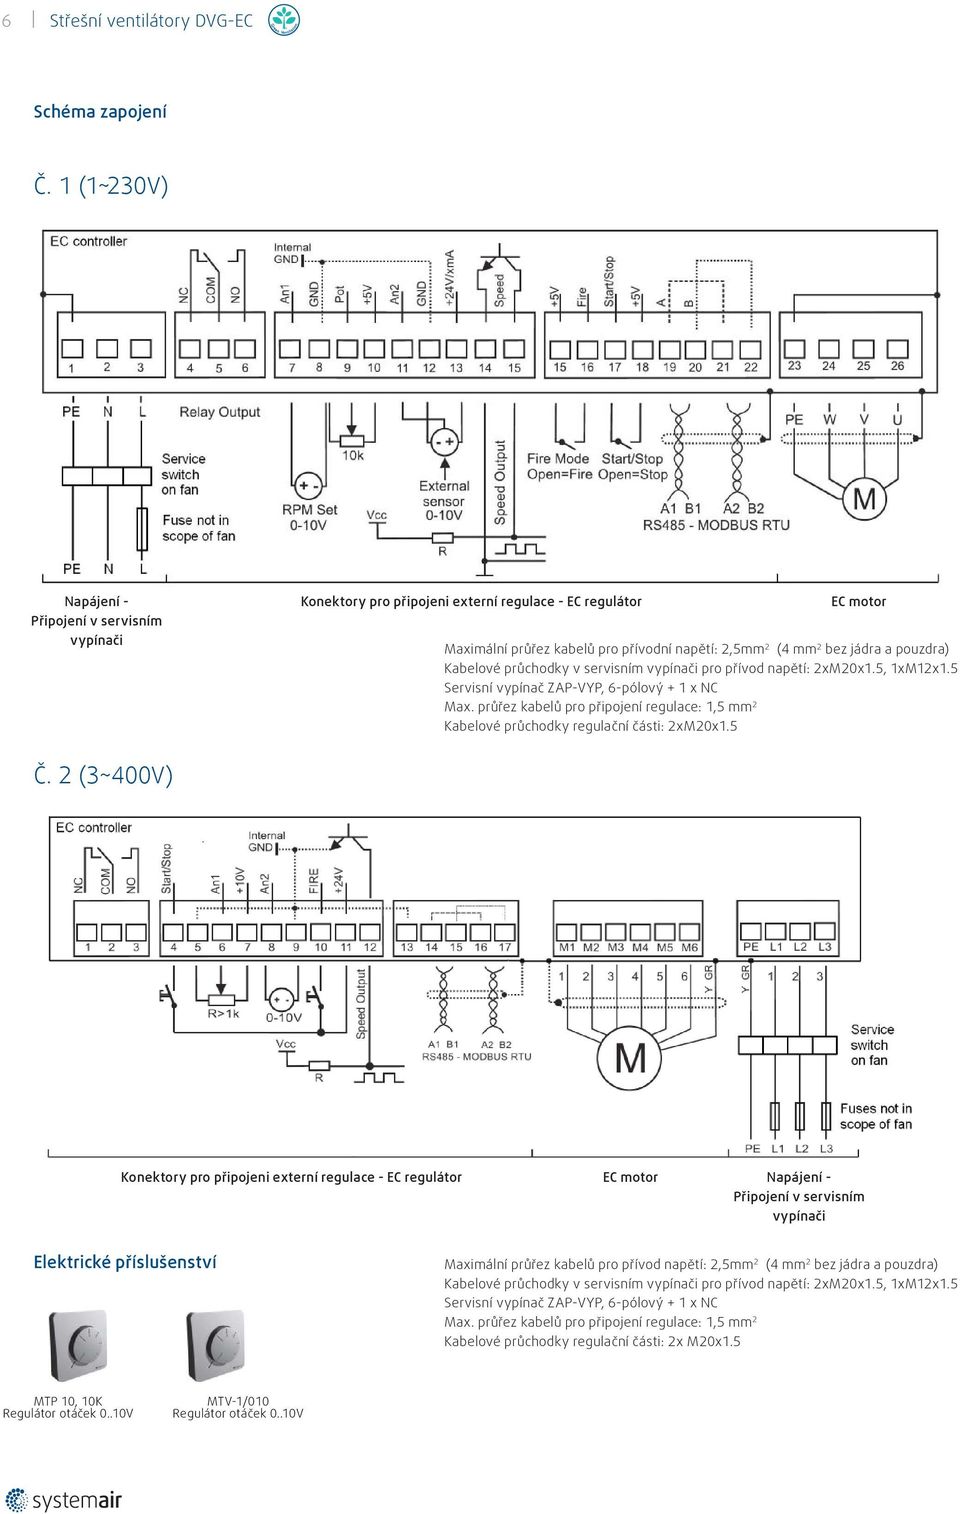 Kabelové průchodky v servisním vypínači pro přívod napětí: 2xM2x1.5, 1xM12x1.5 Servisní vypínač ZAP-VYP, 6-pólový + 1 x NC Max.